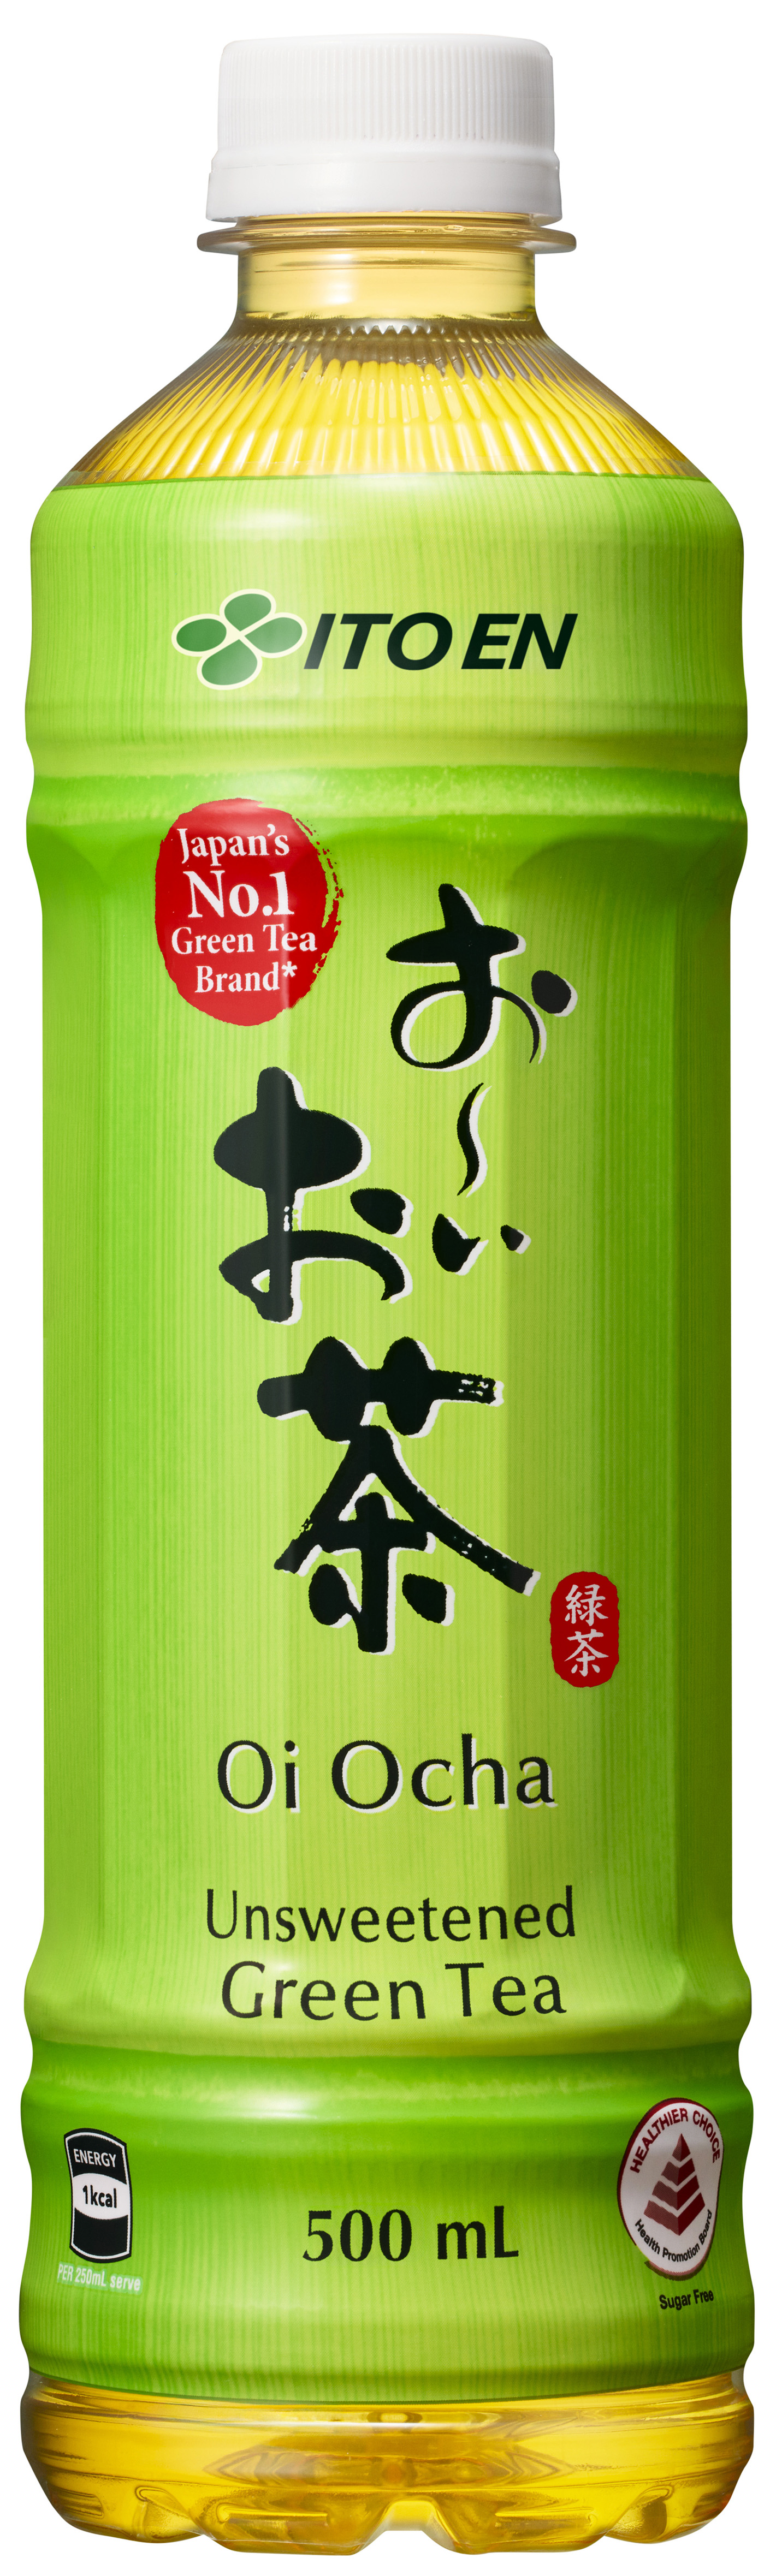 ITO EN thúc đẩy giá trị trà của Nhật Bản trên toàn thế giới - Ảnh 1